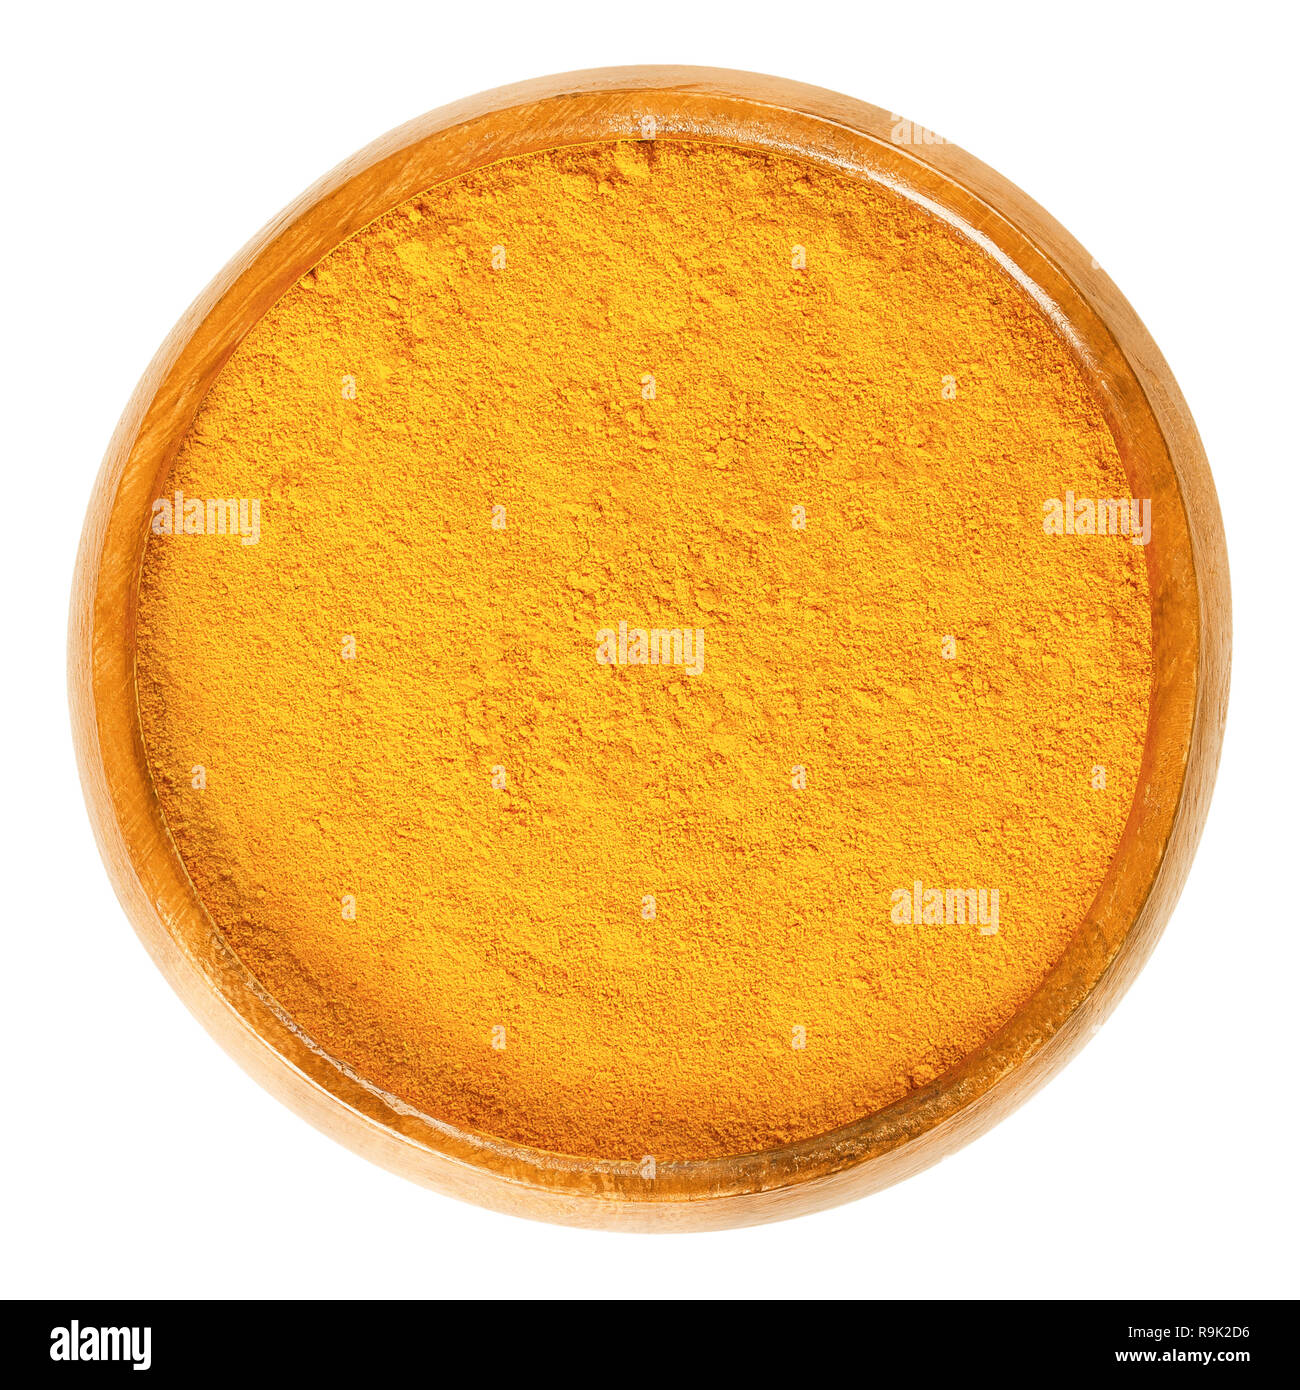 Kurkuma Pulver in Houten. Tief orange spice, als Farb- und Aromastoffe agent für Curries verwendet. Verarbeitet und Boden wurzelstöcke von Curcuma longa. Stockfoto